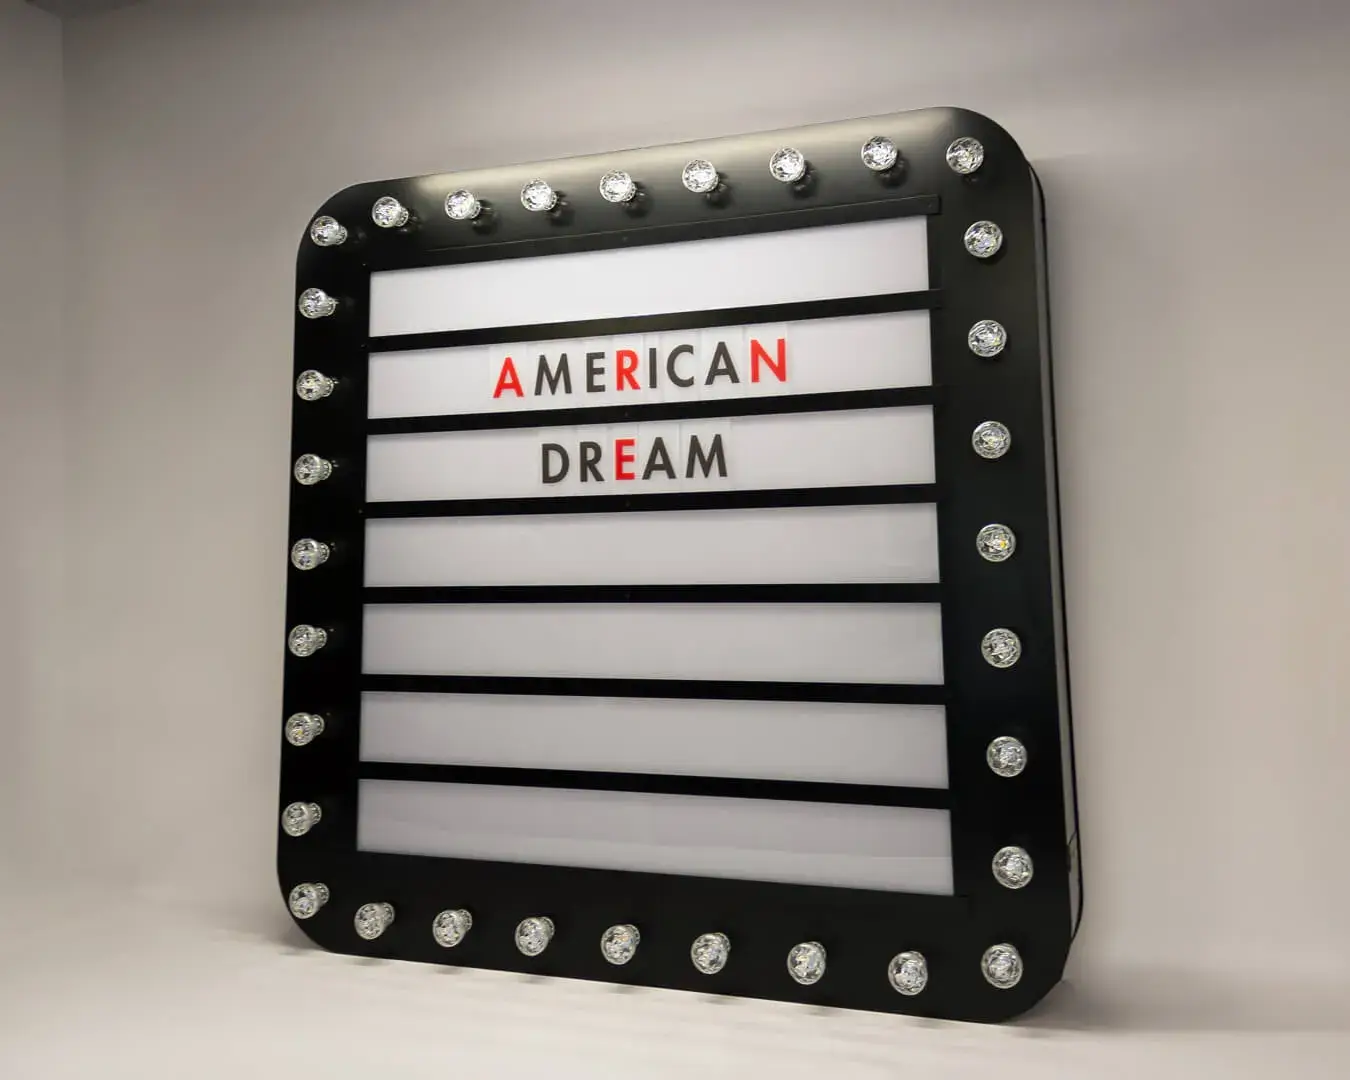 American Dream - tablica z żarówkami, z możliwością zmiany liter, w stylu retro.